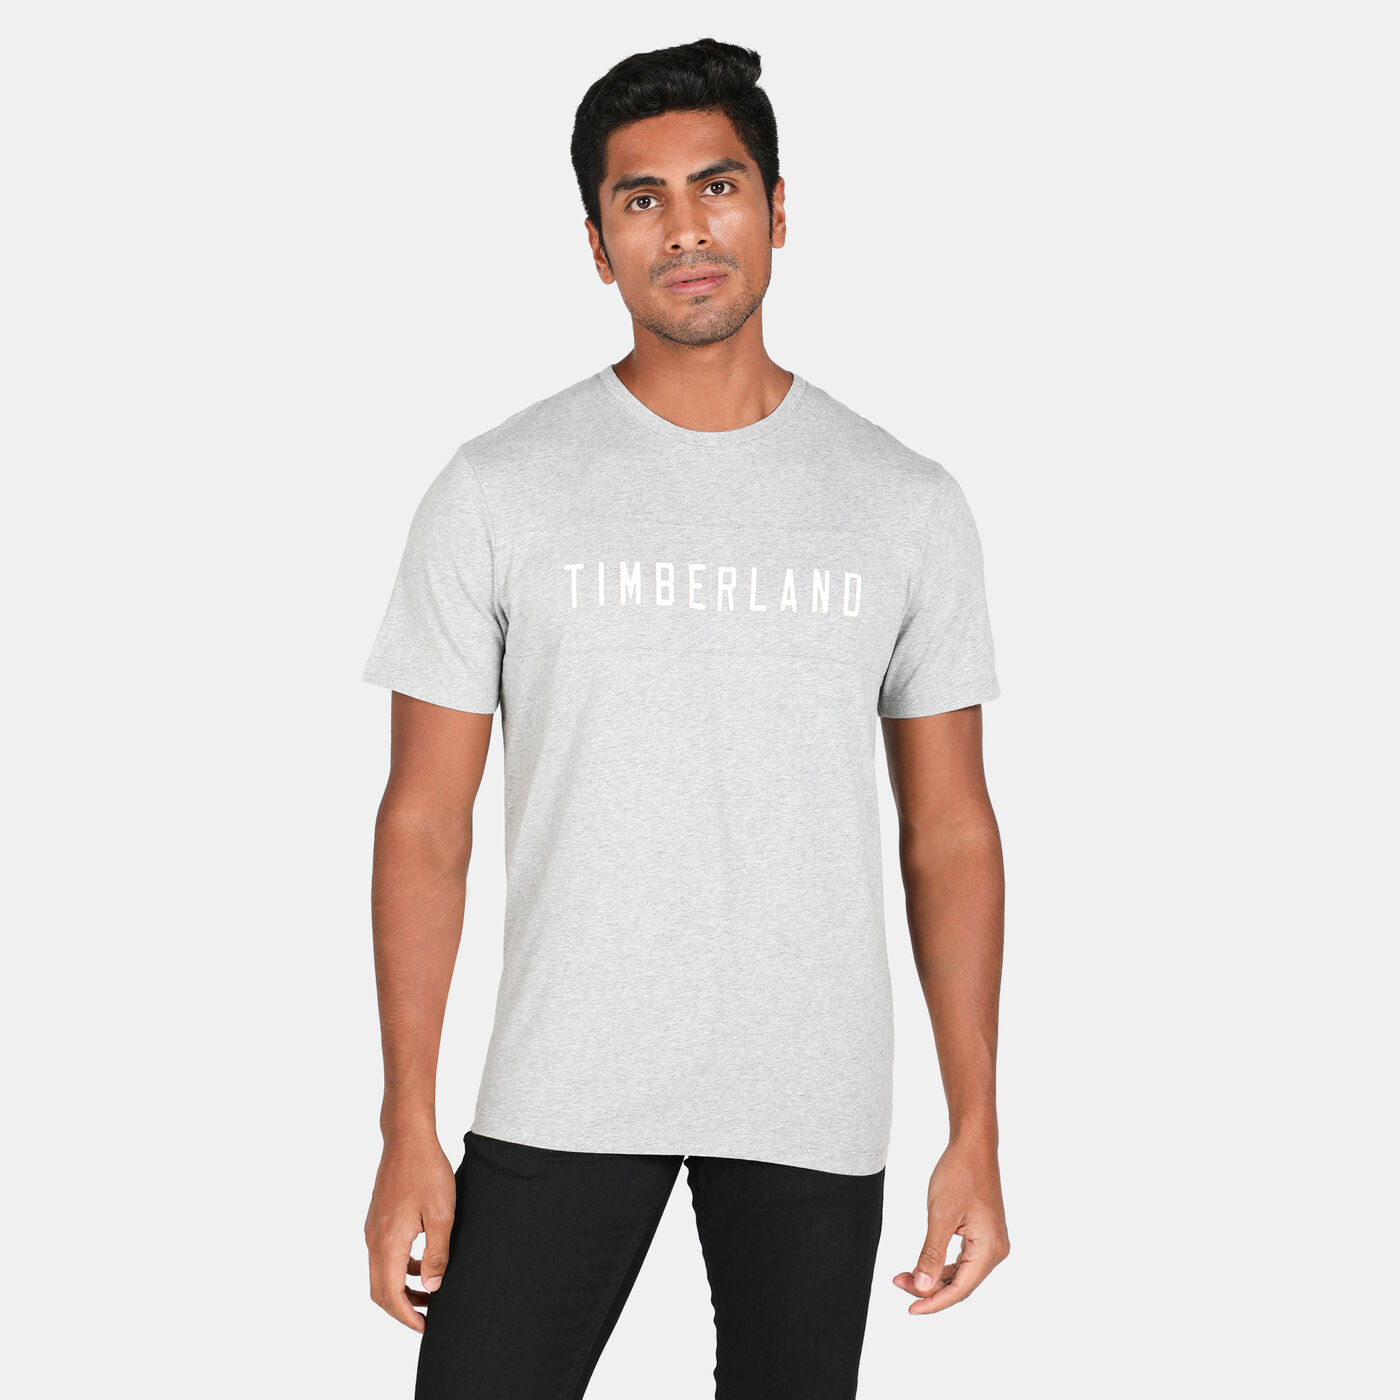 Men's Block Branded Carrier T-Shirt